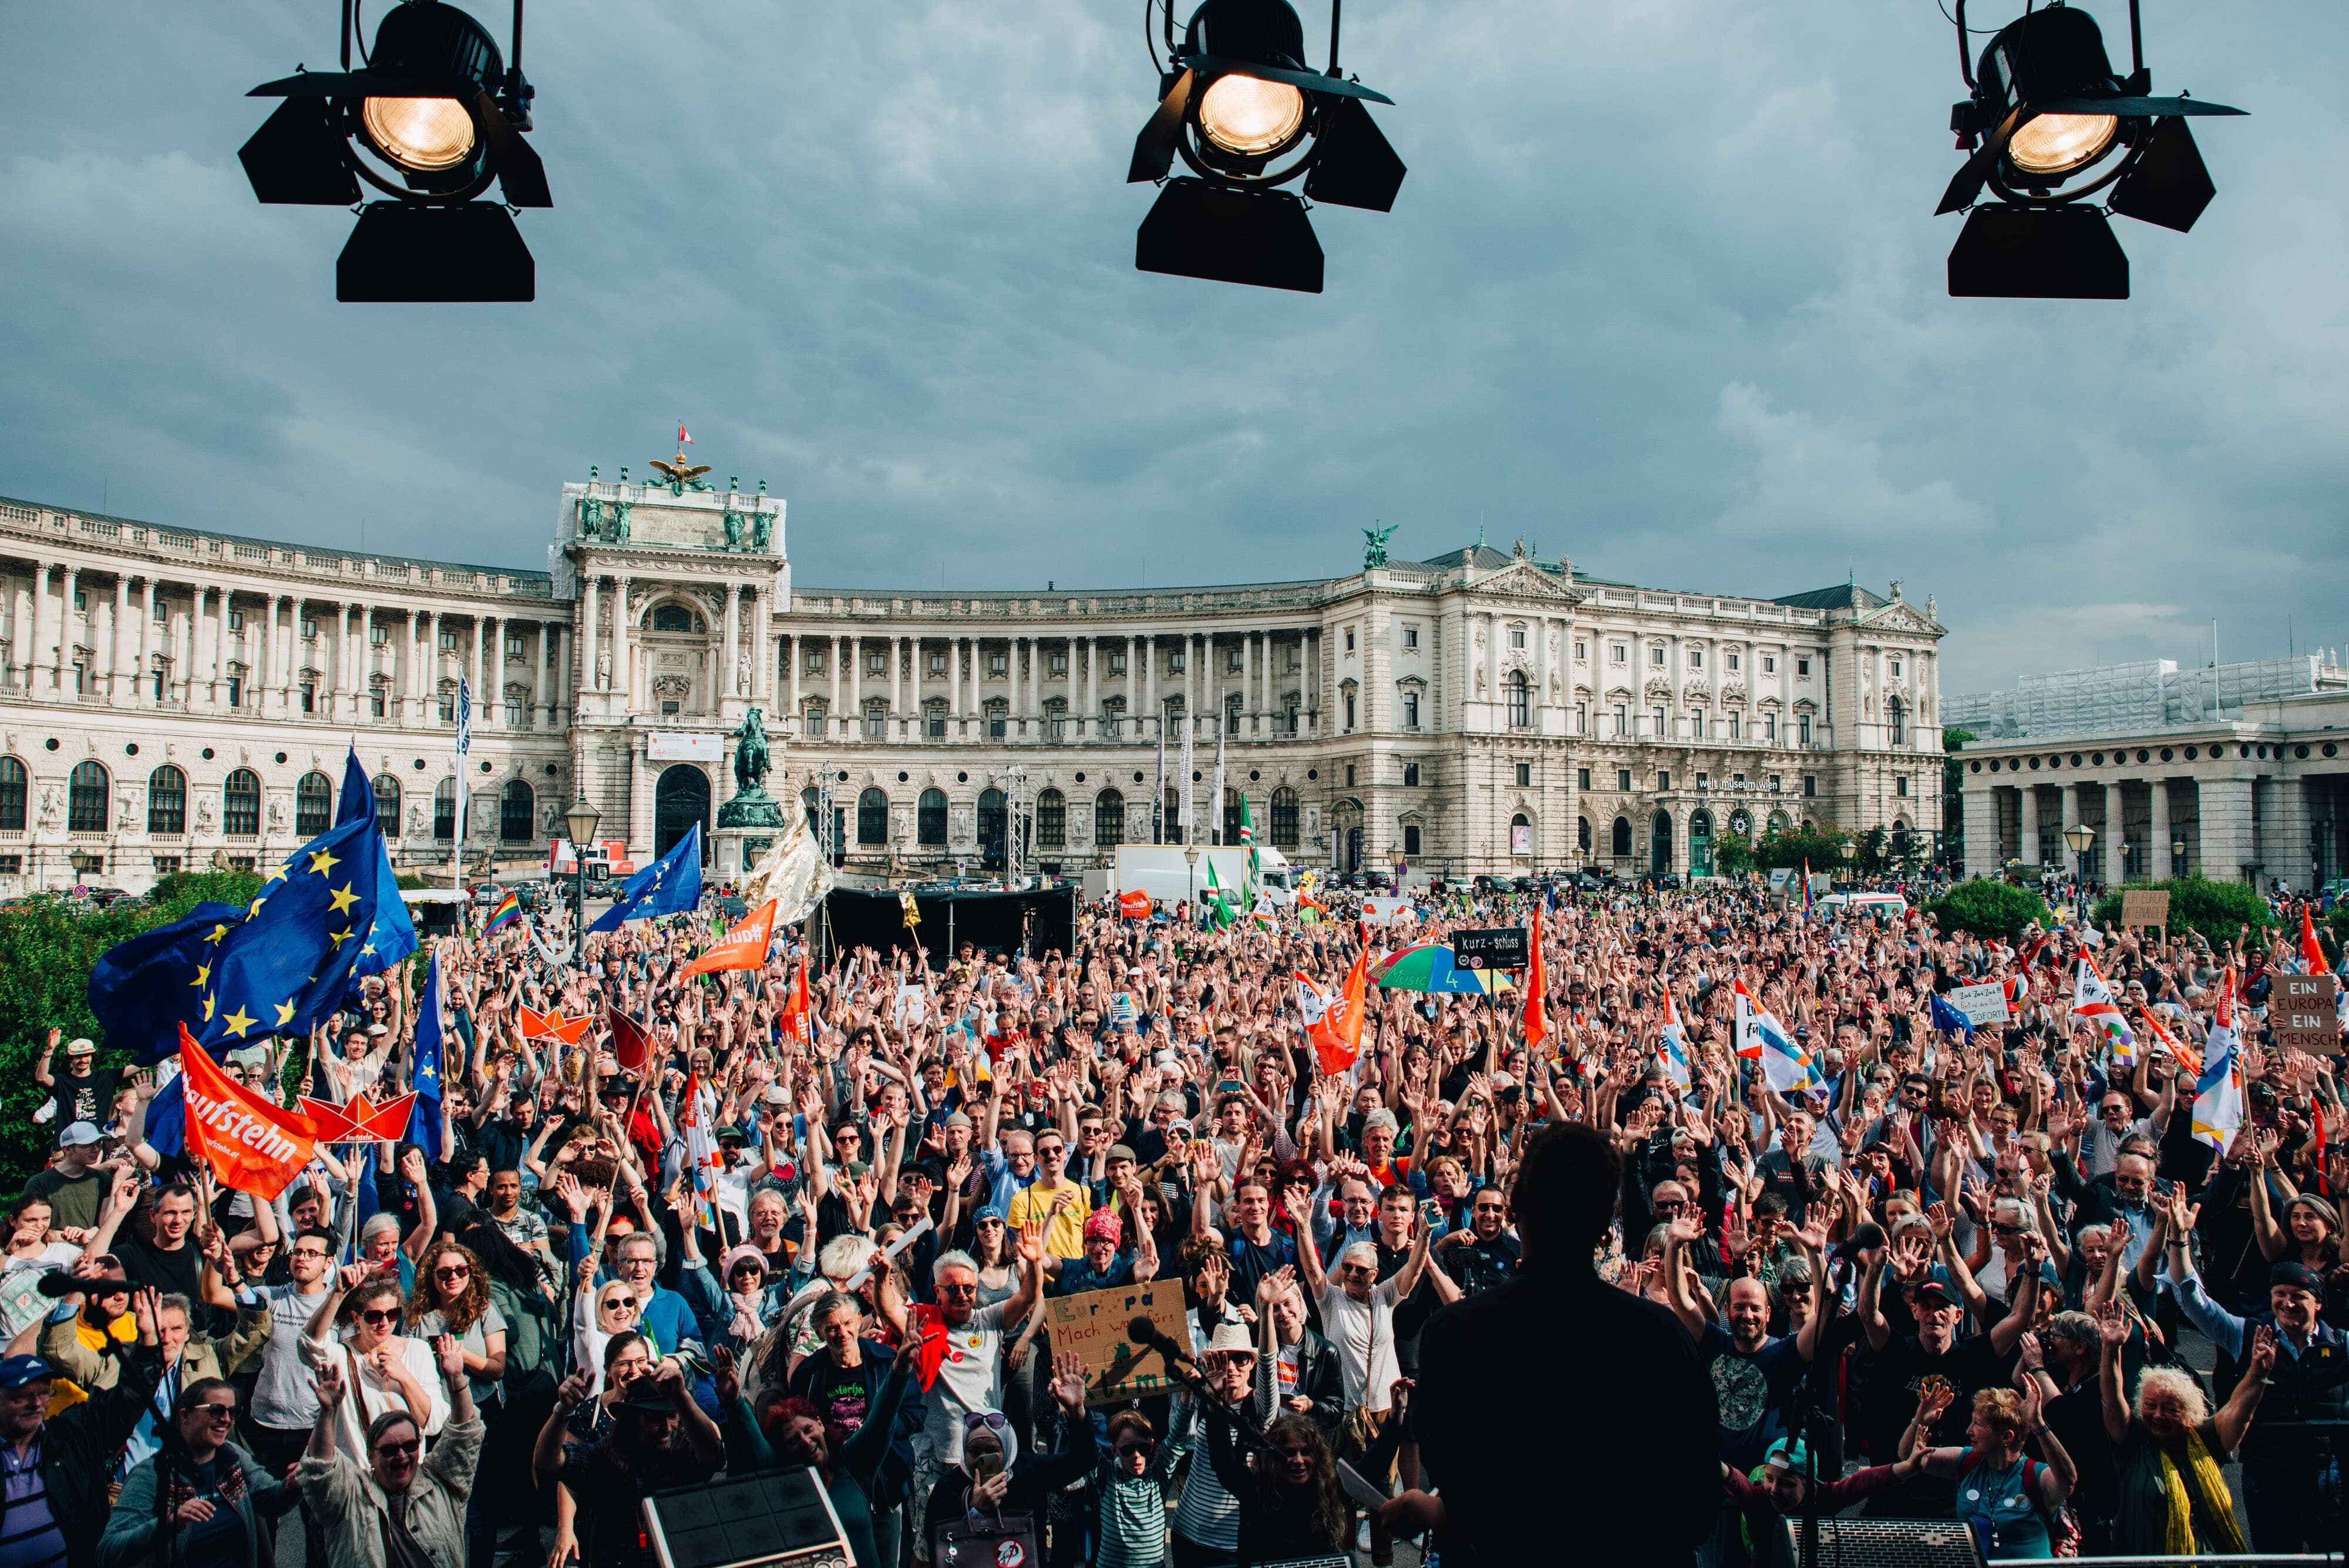 Zdjęcie przedstawiające tłum ludzi zgromadzonych na placu miejskim, trzymających flagi EU i inne